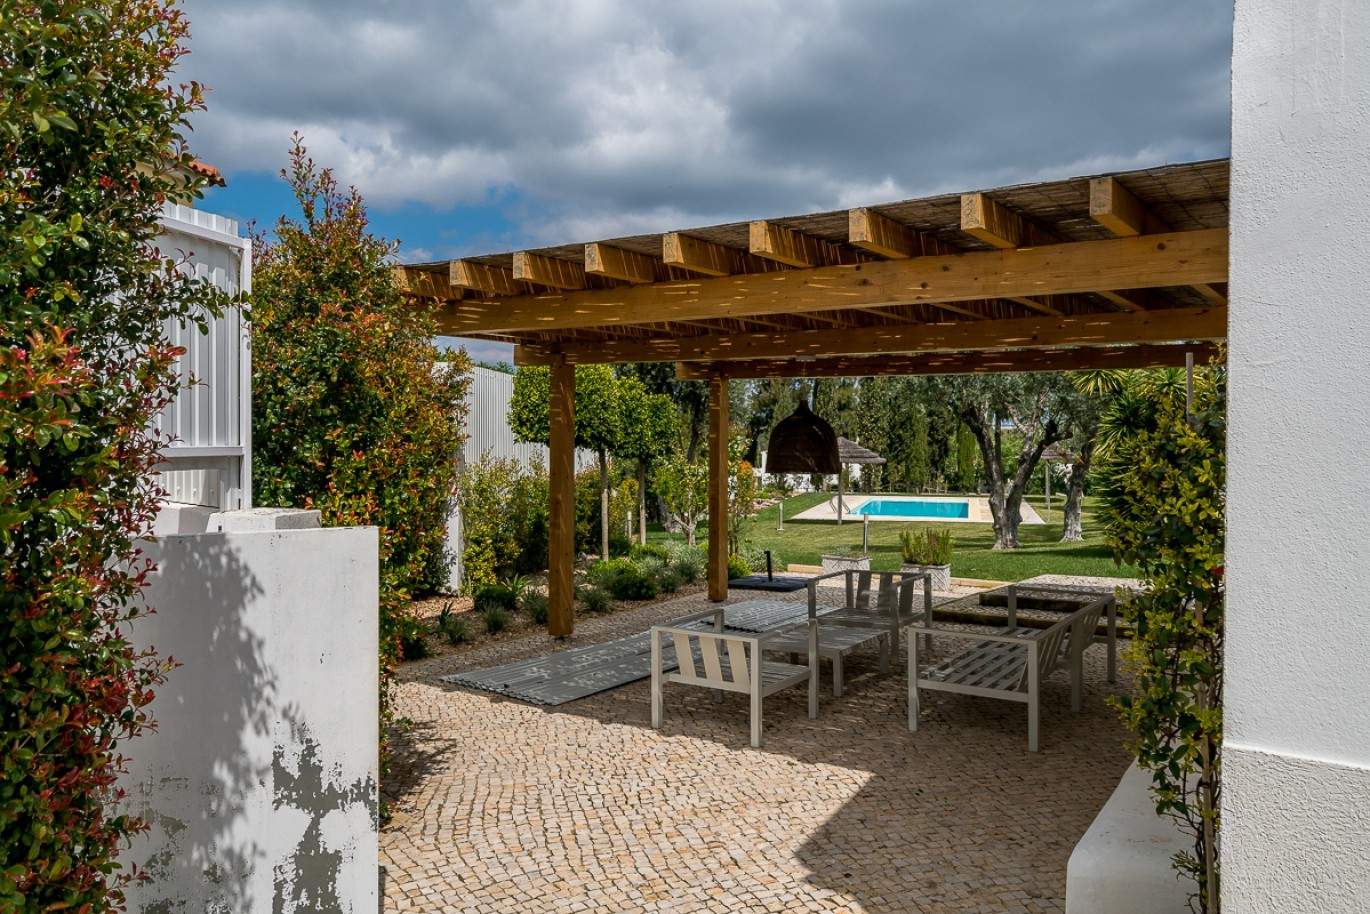 Venda de moradia de alto padrão com piscina, Silves, Algarve, Portugal_77355